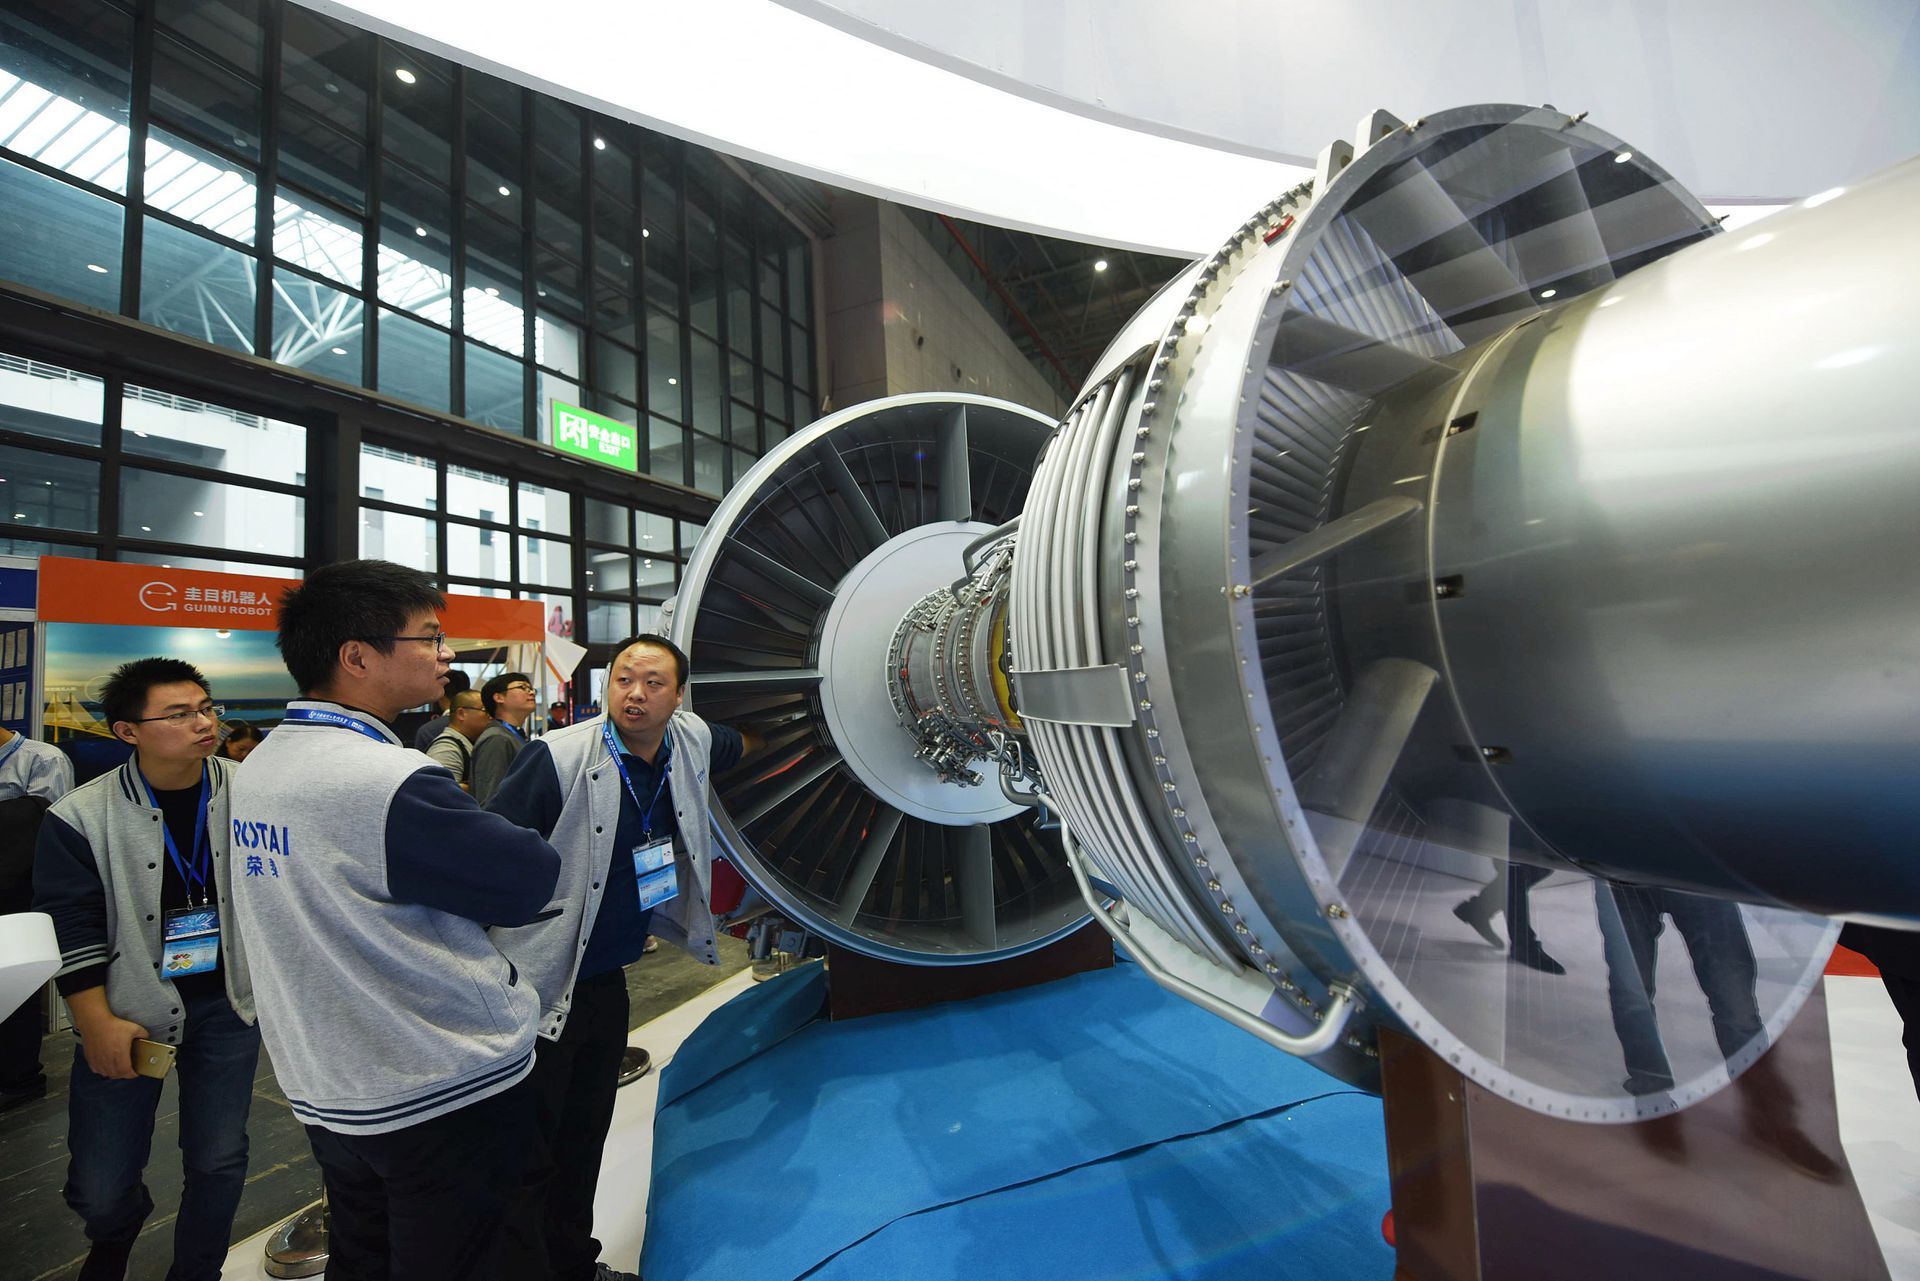 参观者在观看中国国产大型客机发动机CJ-1000A等比例模型。 （视觉中国）